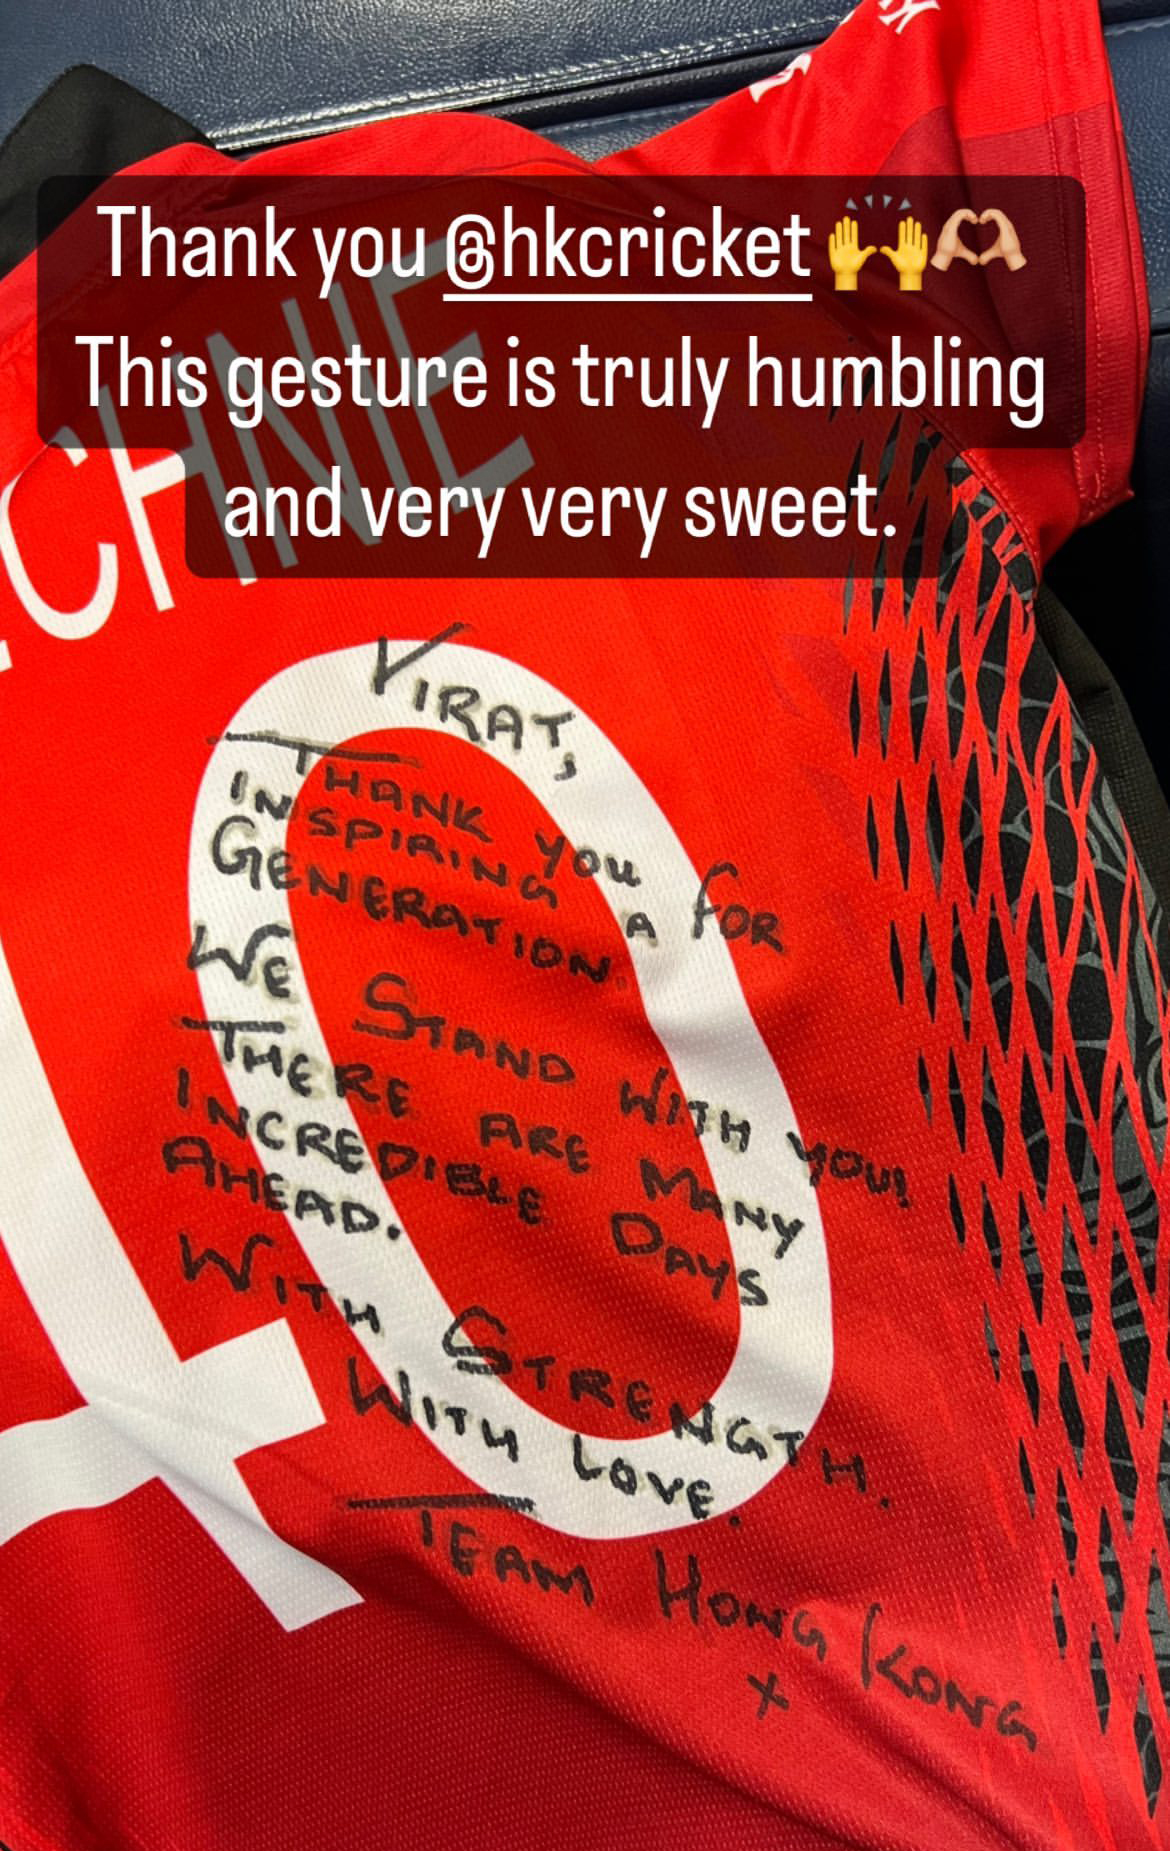 Asia Cup 2022: Hong Kong gifts Virat Kohli team jersey, shares heartwarming message